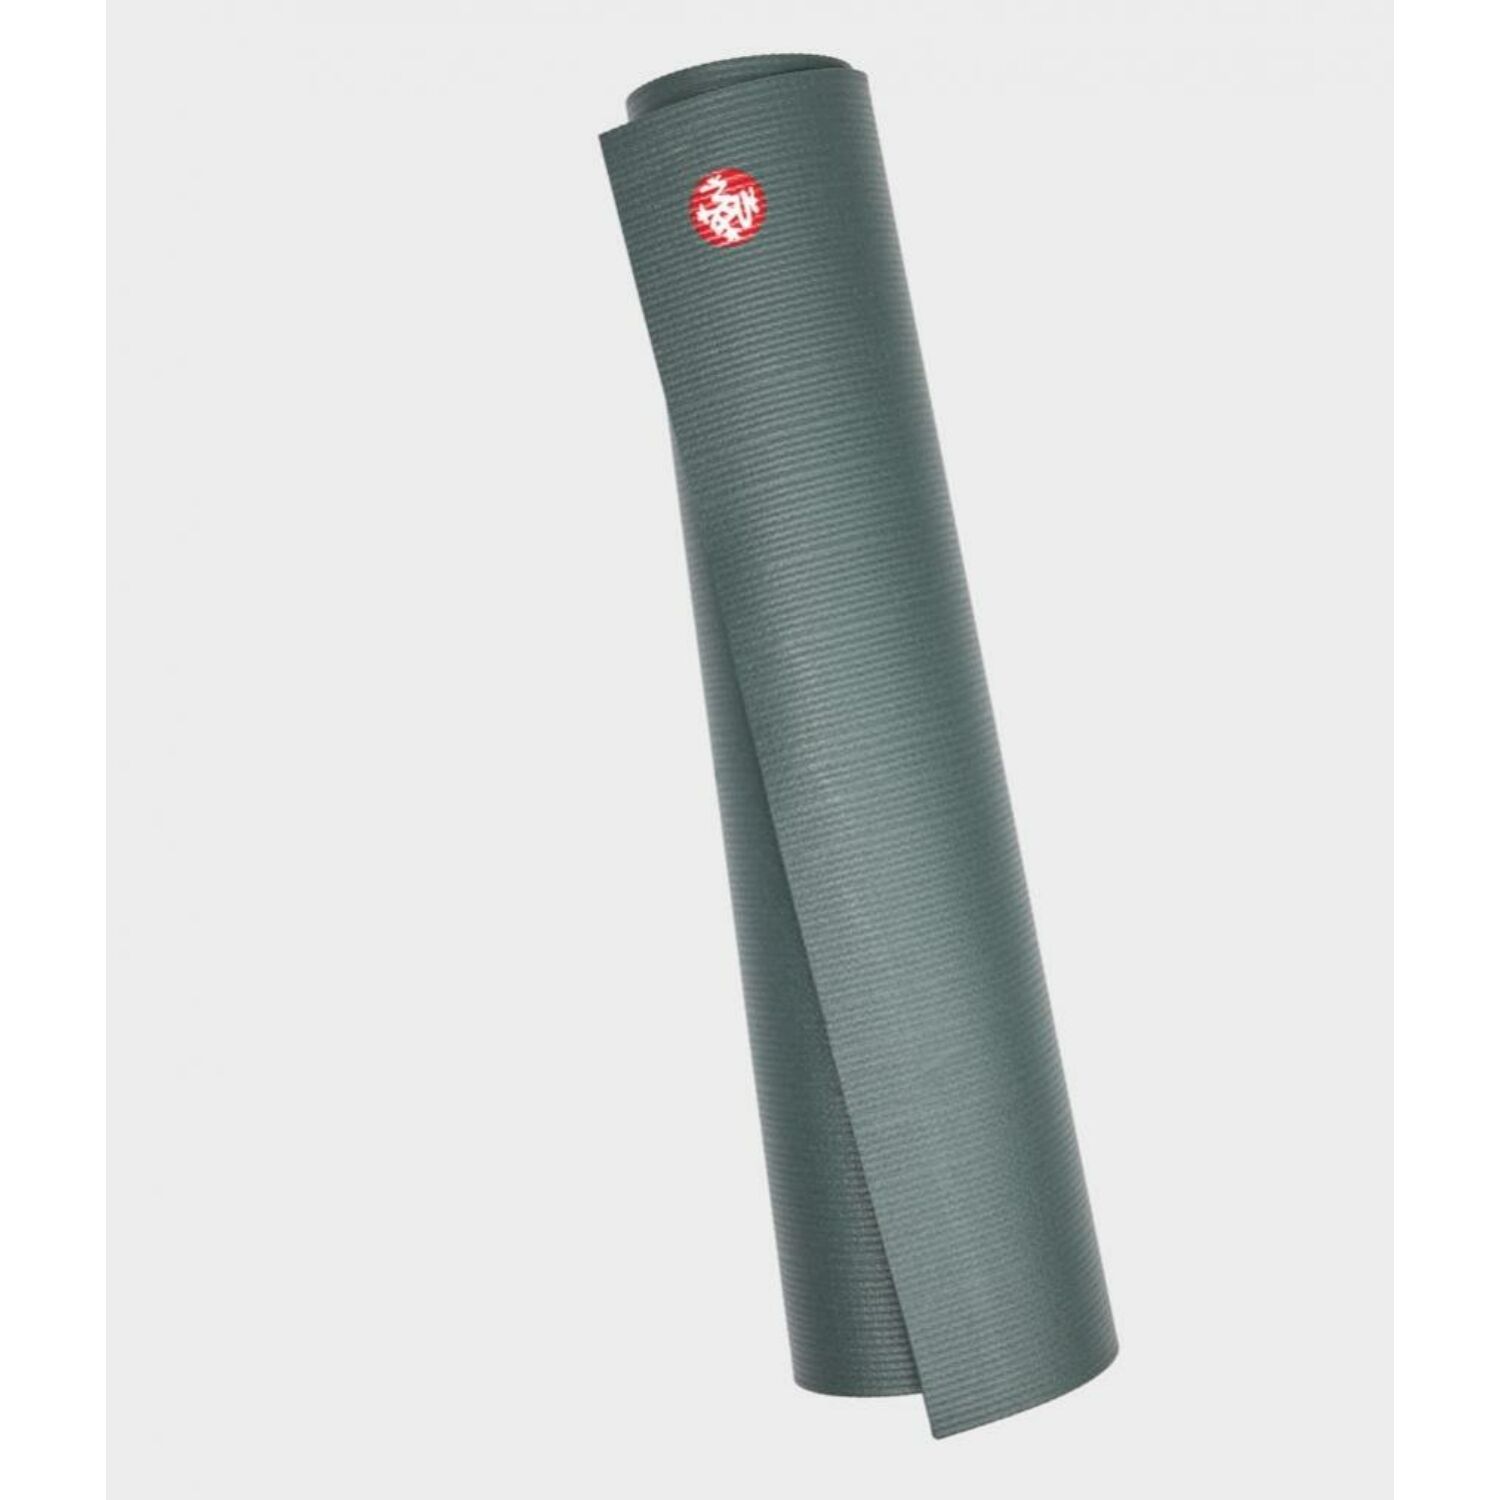 Manduka pro® yoga mat 6MM - Black sage - szürkészöld - extra hosszú 215cm x 66cm - 6MM